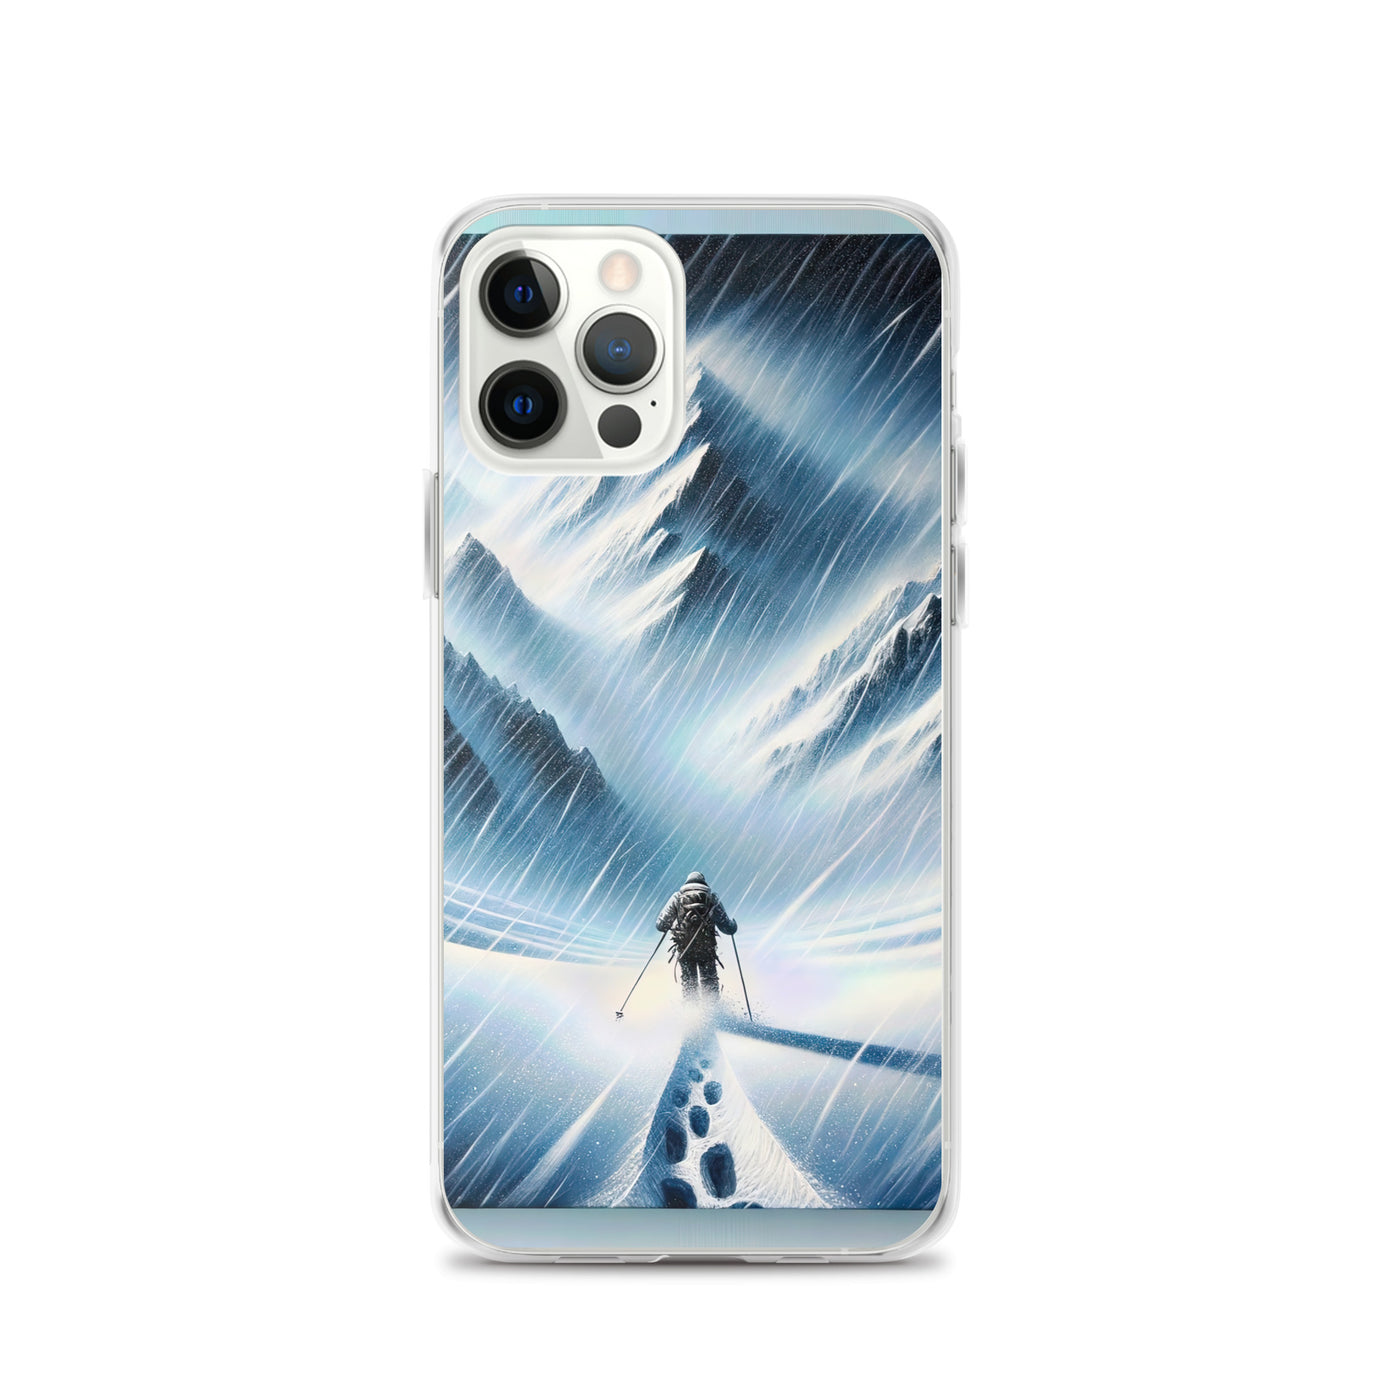 Wanderer und Bergsteiger im Schneesturm: Acrylgemälde der Alpen - iPhone Schutzhülle (durchsichtig) wandern xxx yyy zzz iPhone 12 Pro